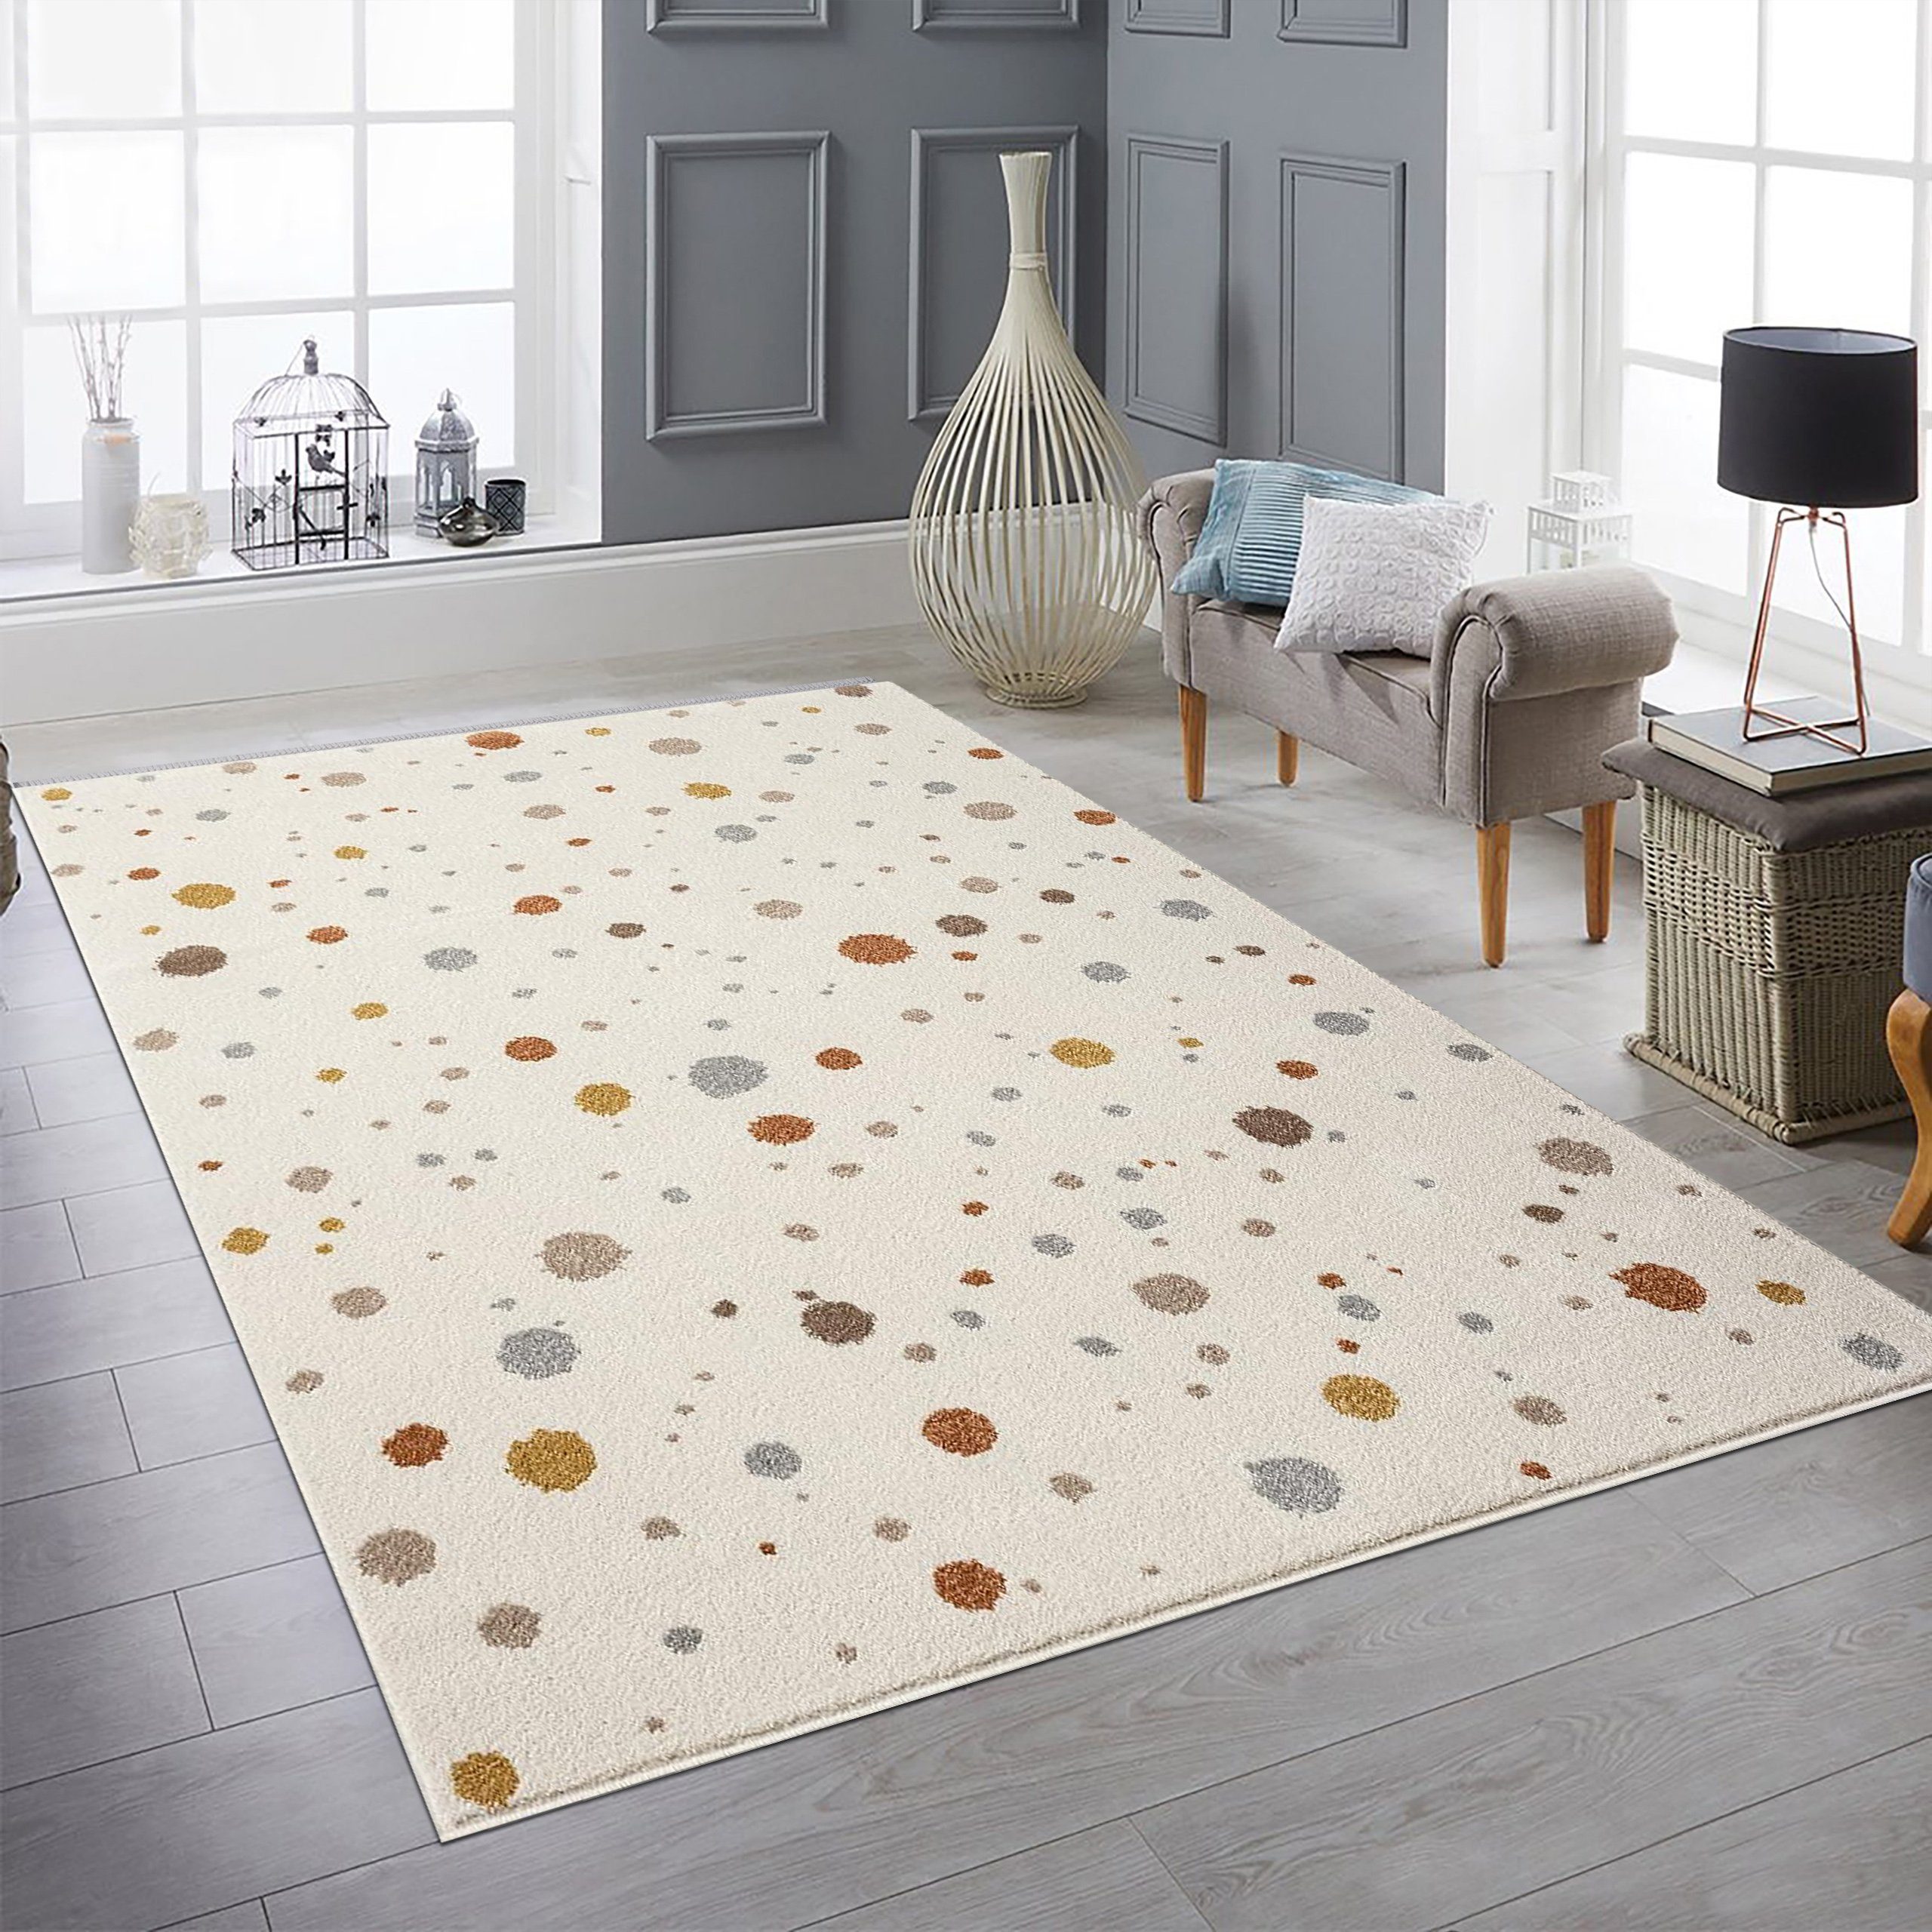 Teppich Designerteppich creme weich Farbkleckse grau braun beige elegant, Teppich-Traum, rund, Höhe: 9 mm